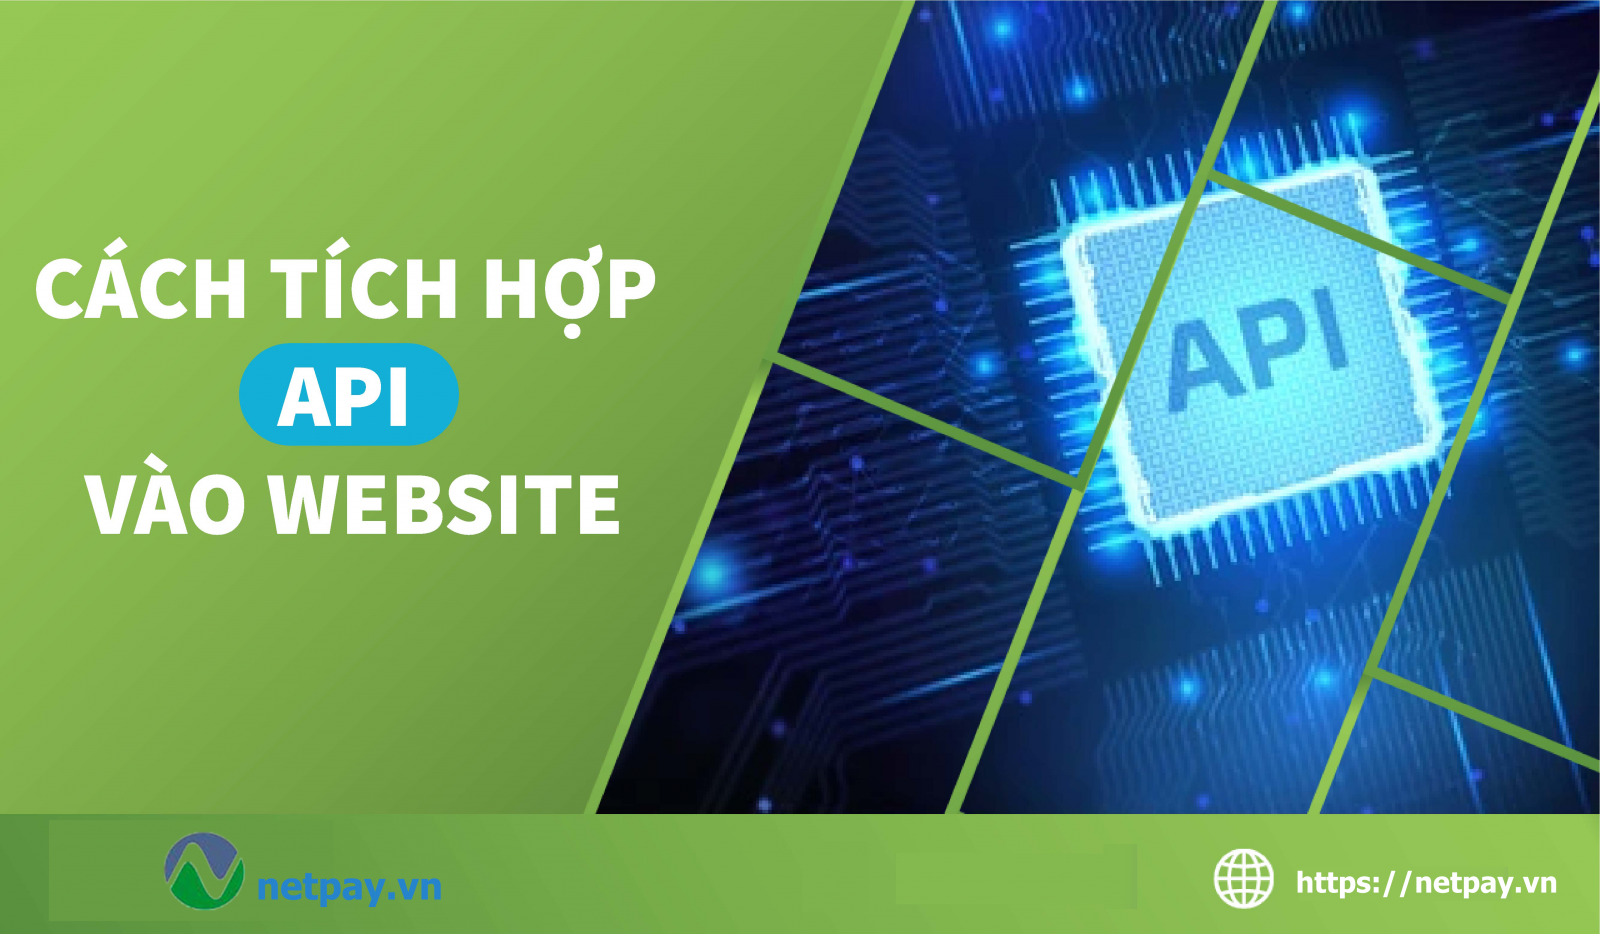 Hướng dẫn cách tích hợp API vào Website mới nhất của Netpay